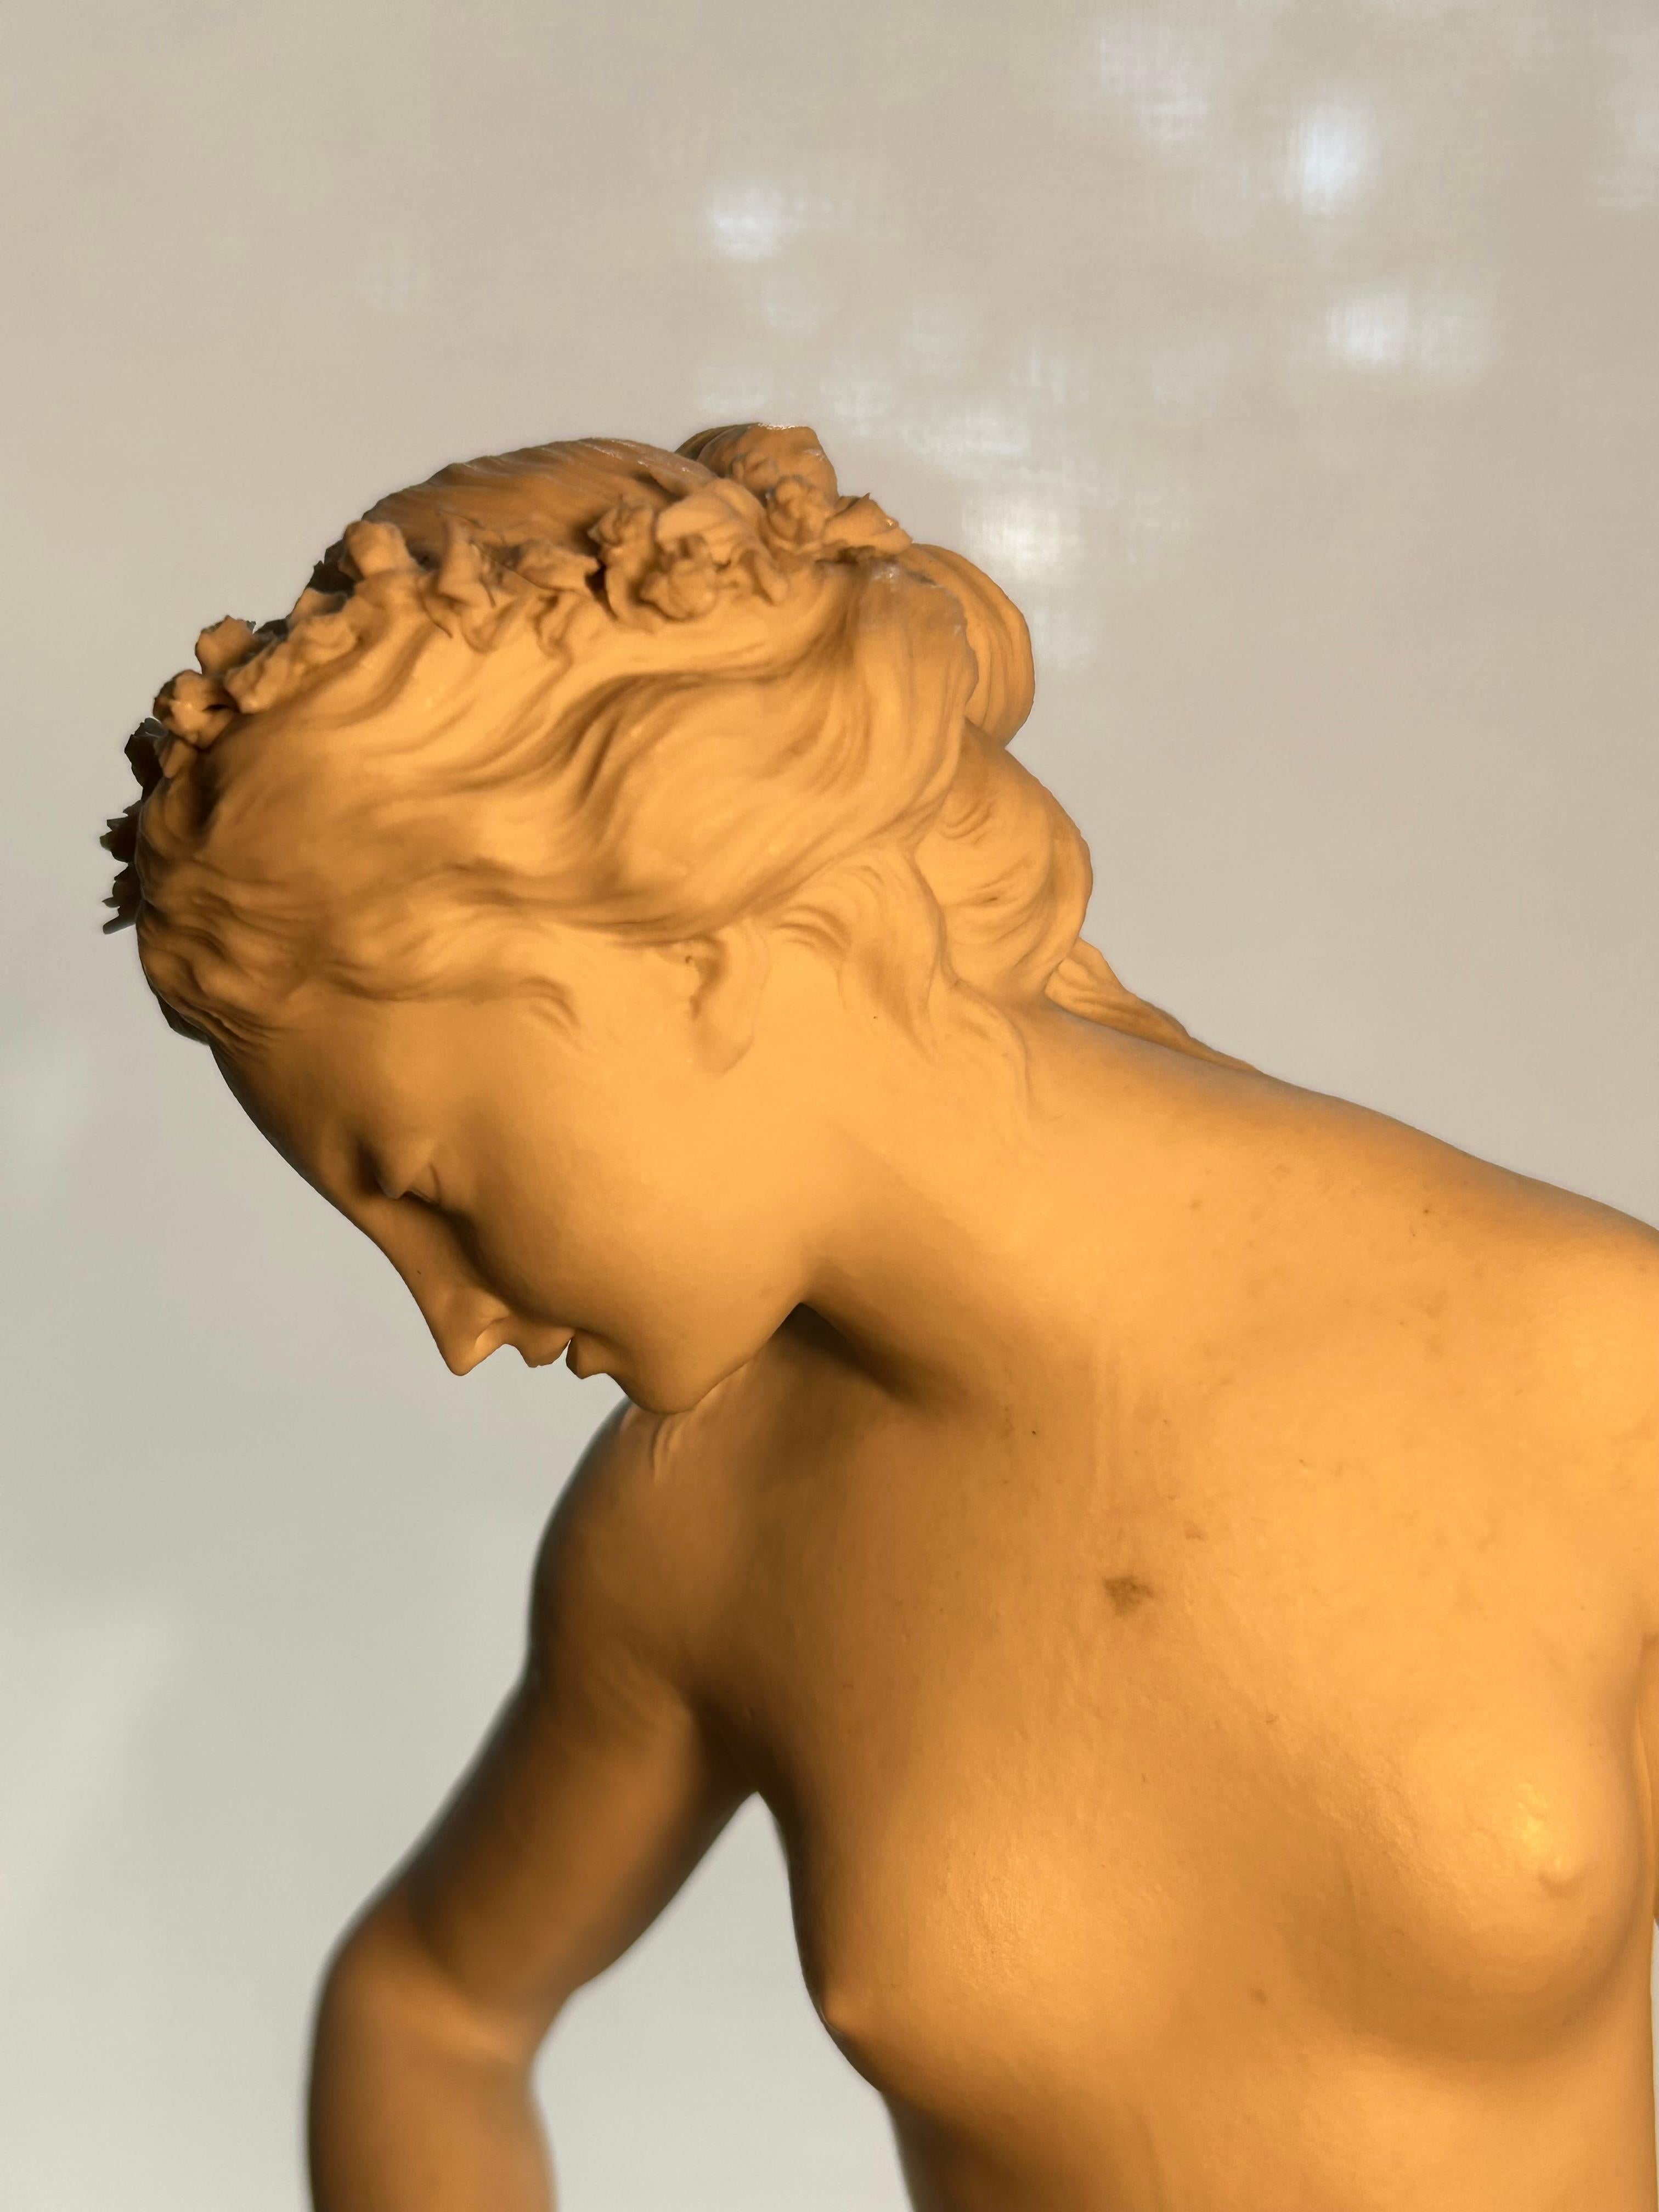 Eine exquisite Biskuit-Porzellanfigur von Venus und Amor aus der Mitte des neunzehnten Jahrhunderts, Französisch, mit eingeschnittenen gekreuzten Schwertern Marke und ein anderes Gerät auf der Basis geätzt.
Die Fotos werden dem exquisiten Detail